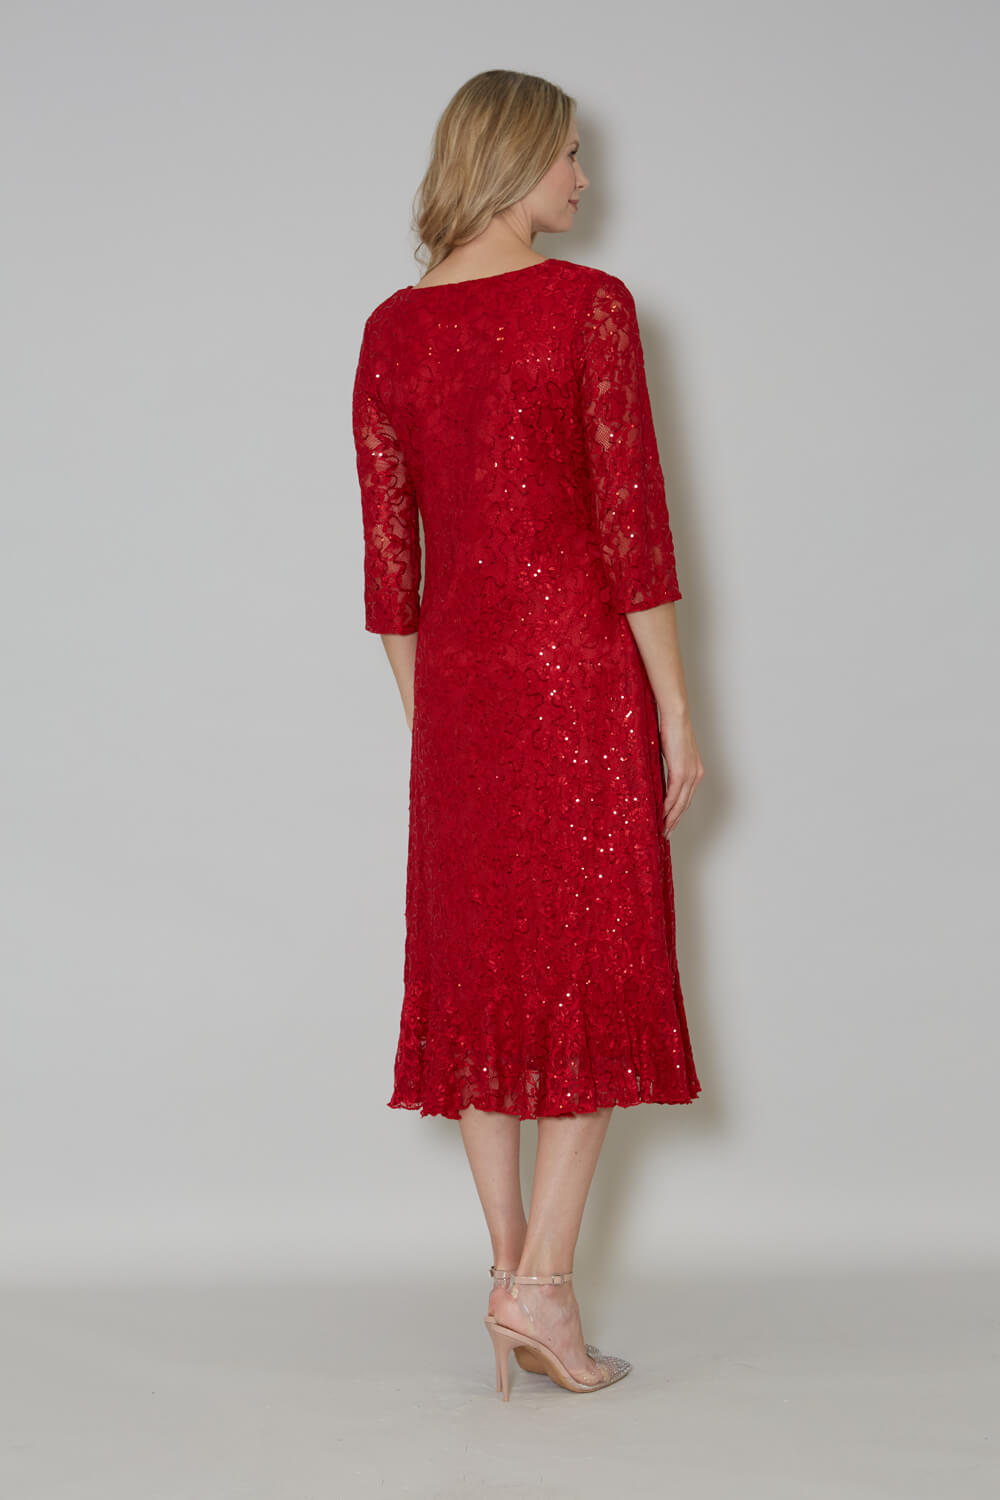 Red Julianna Sequin Frill Hem Midi Dress, Image 2 of 4